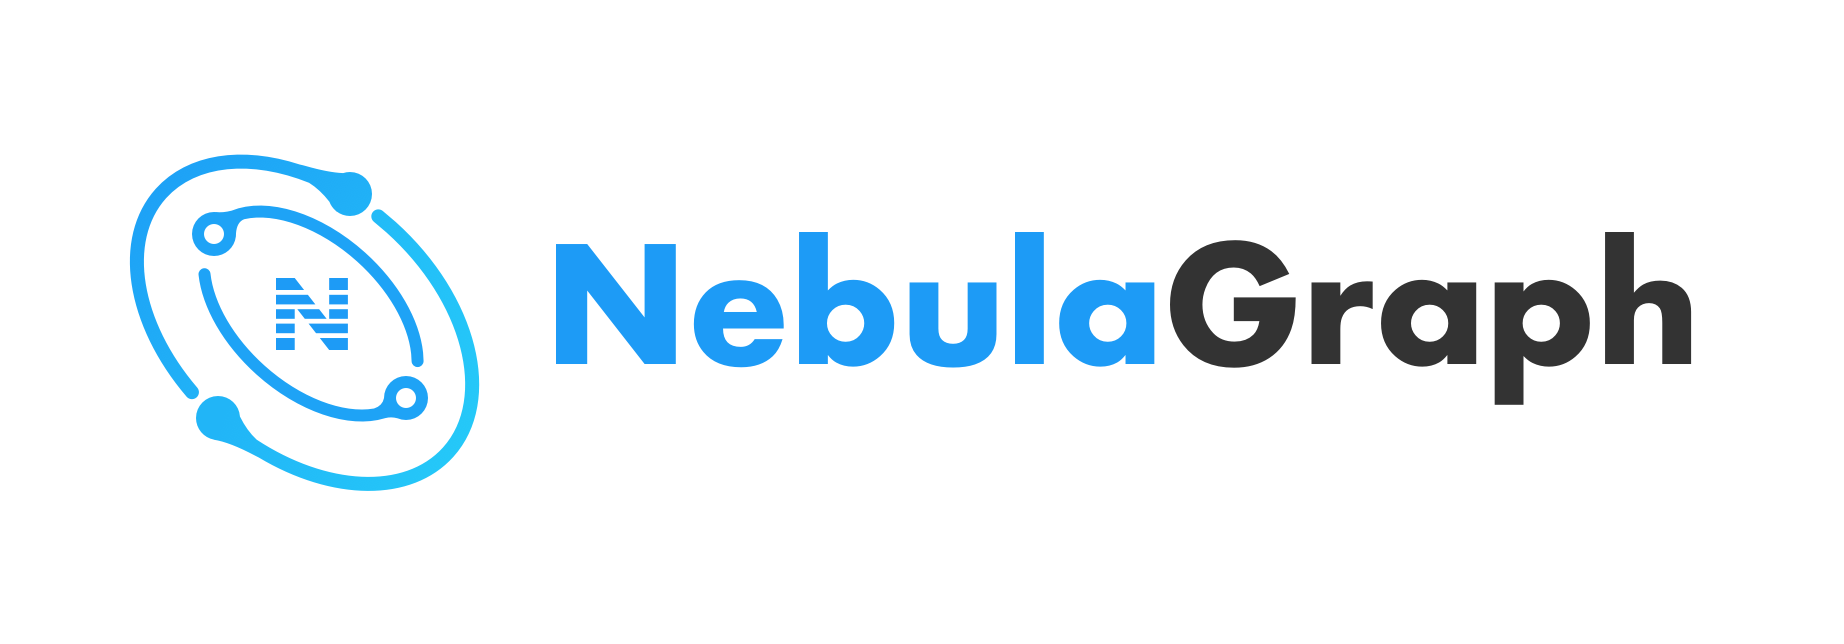 Nebula Graph